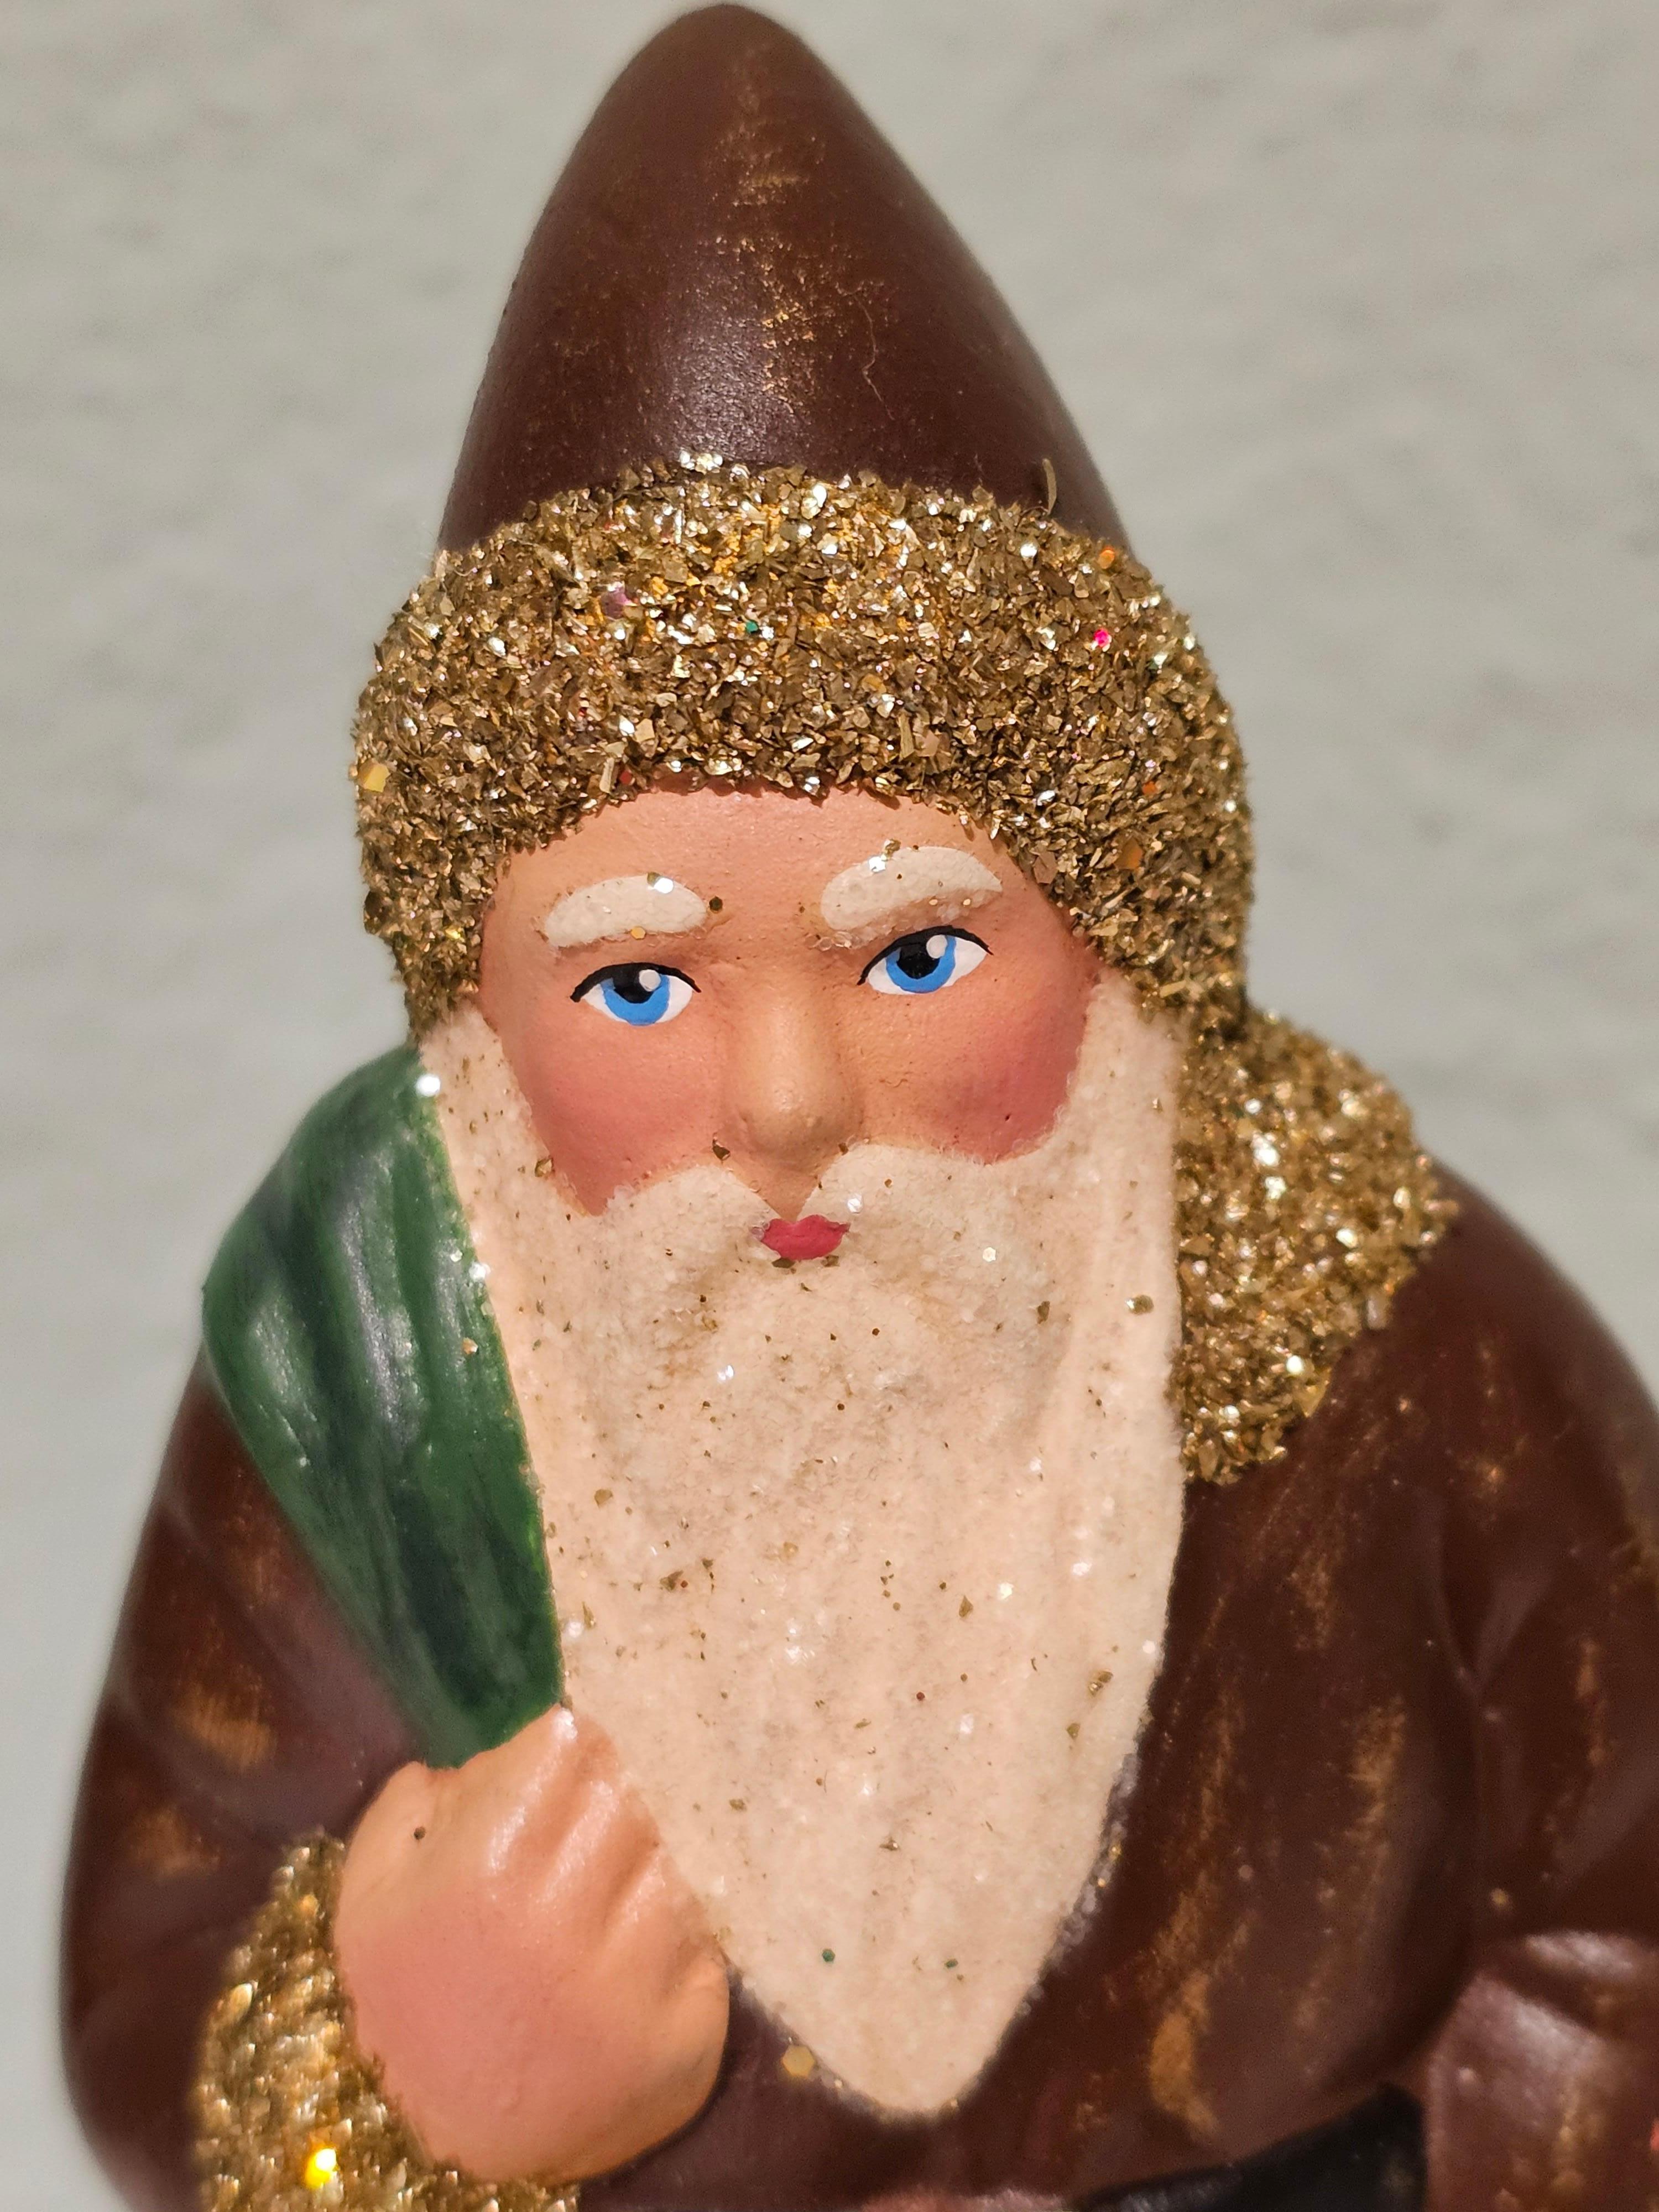 Deutsche Weihnachtsmannfigur aus Pappmaché mit handbemaltem, detailliertem Gesicht. Sie hält einen Nikolaussack und ist mit goldenen Glitzerdetails verziert.
Der Weihnachtsmann wird in der originalen antiken Form in Deutschland handgefertigt.